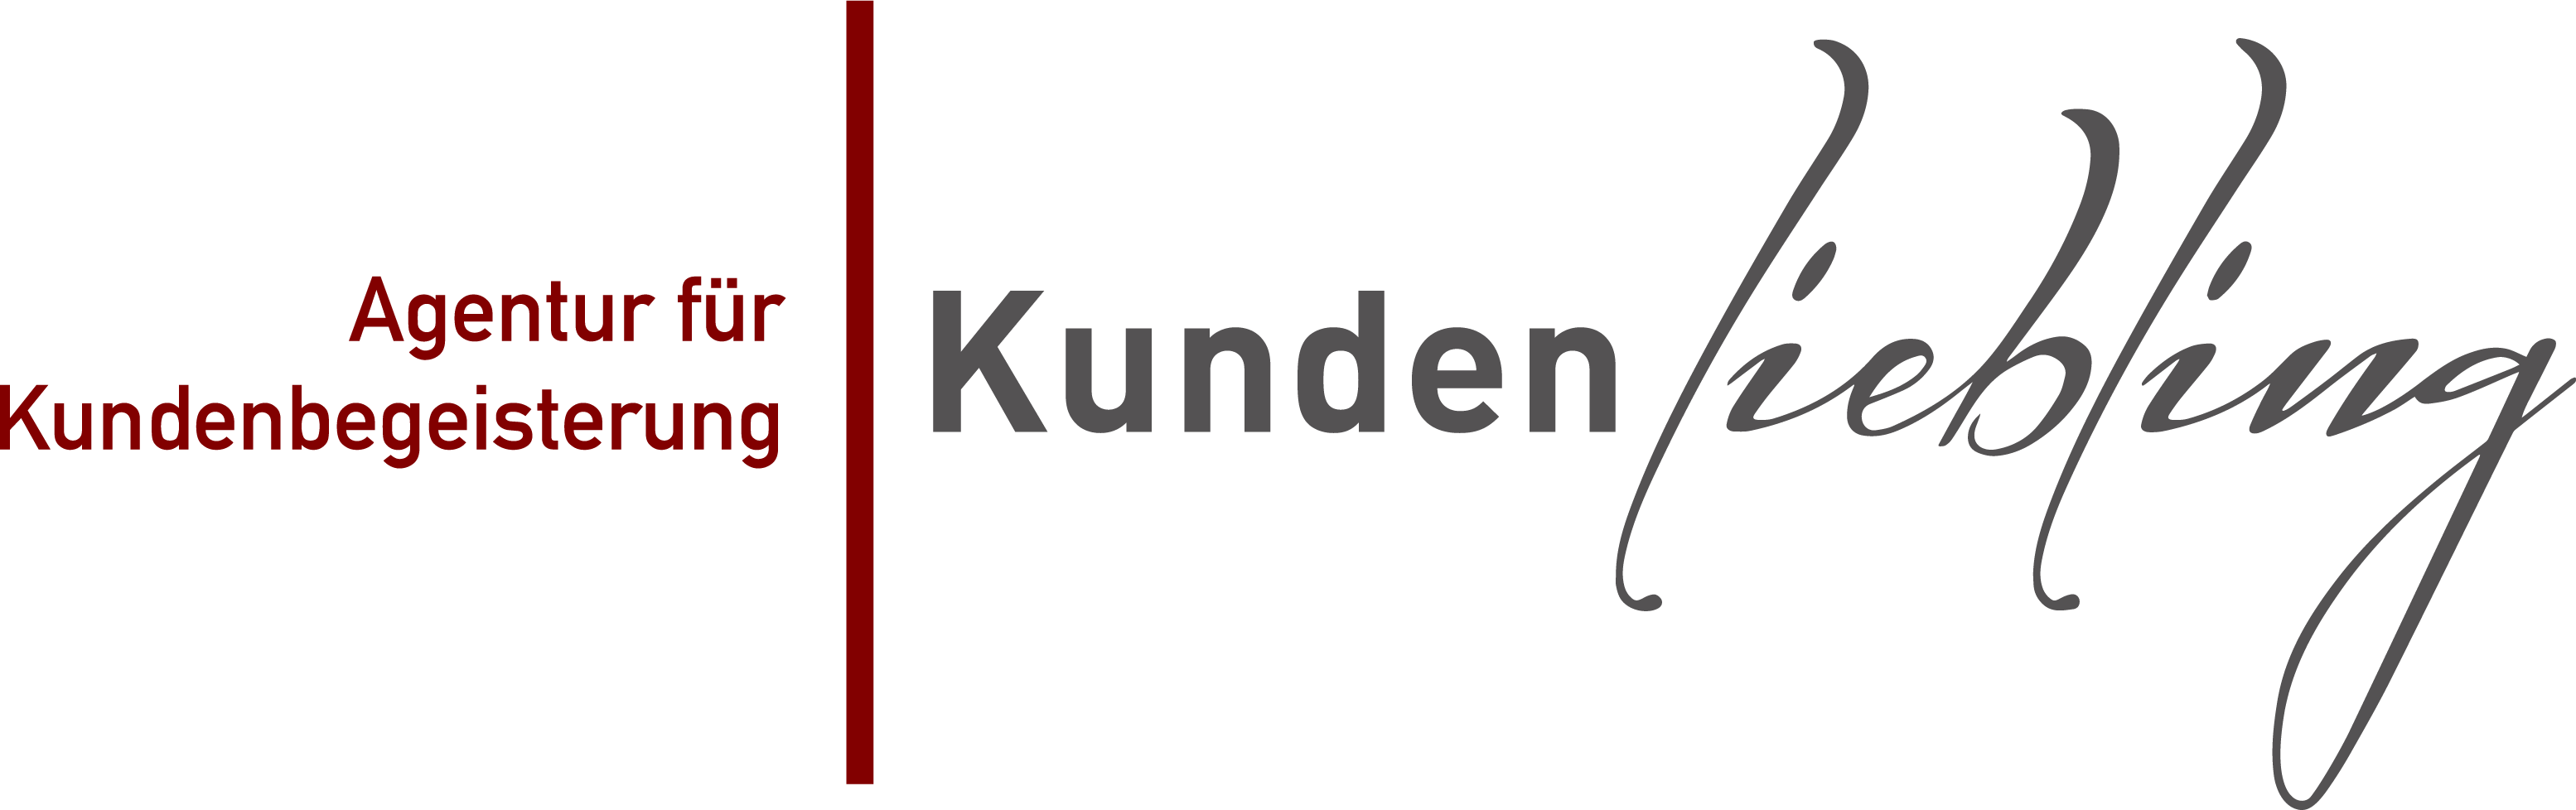 kundenliebling_logo.png